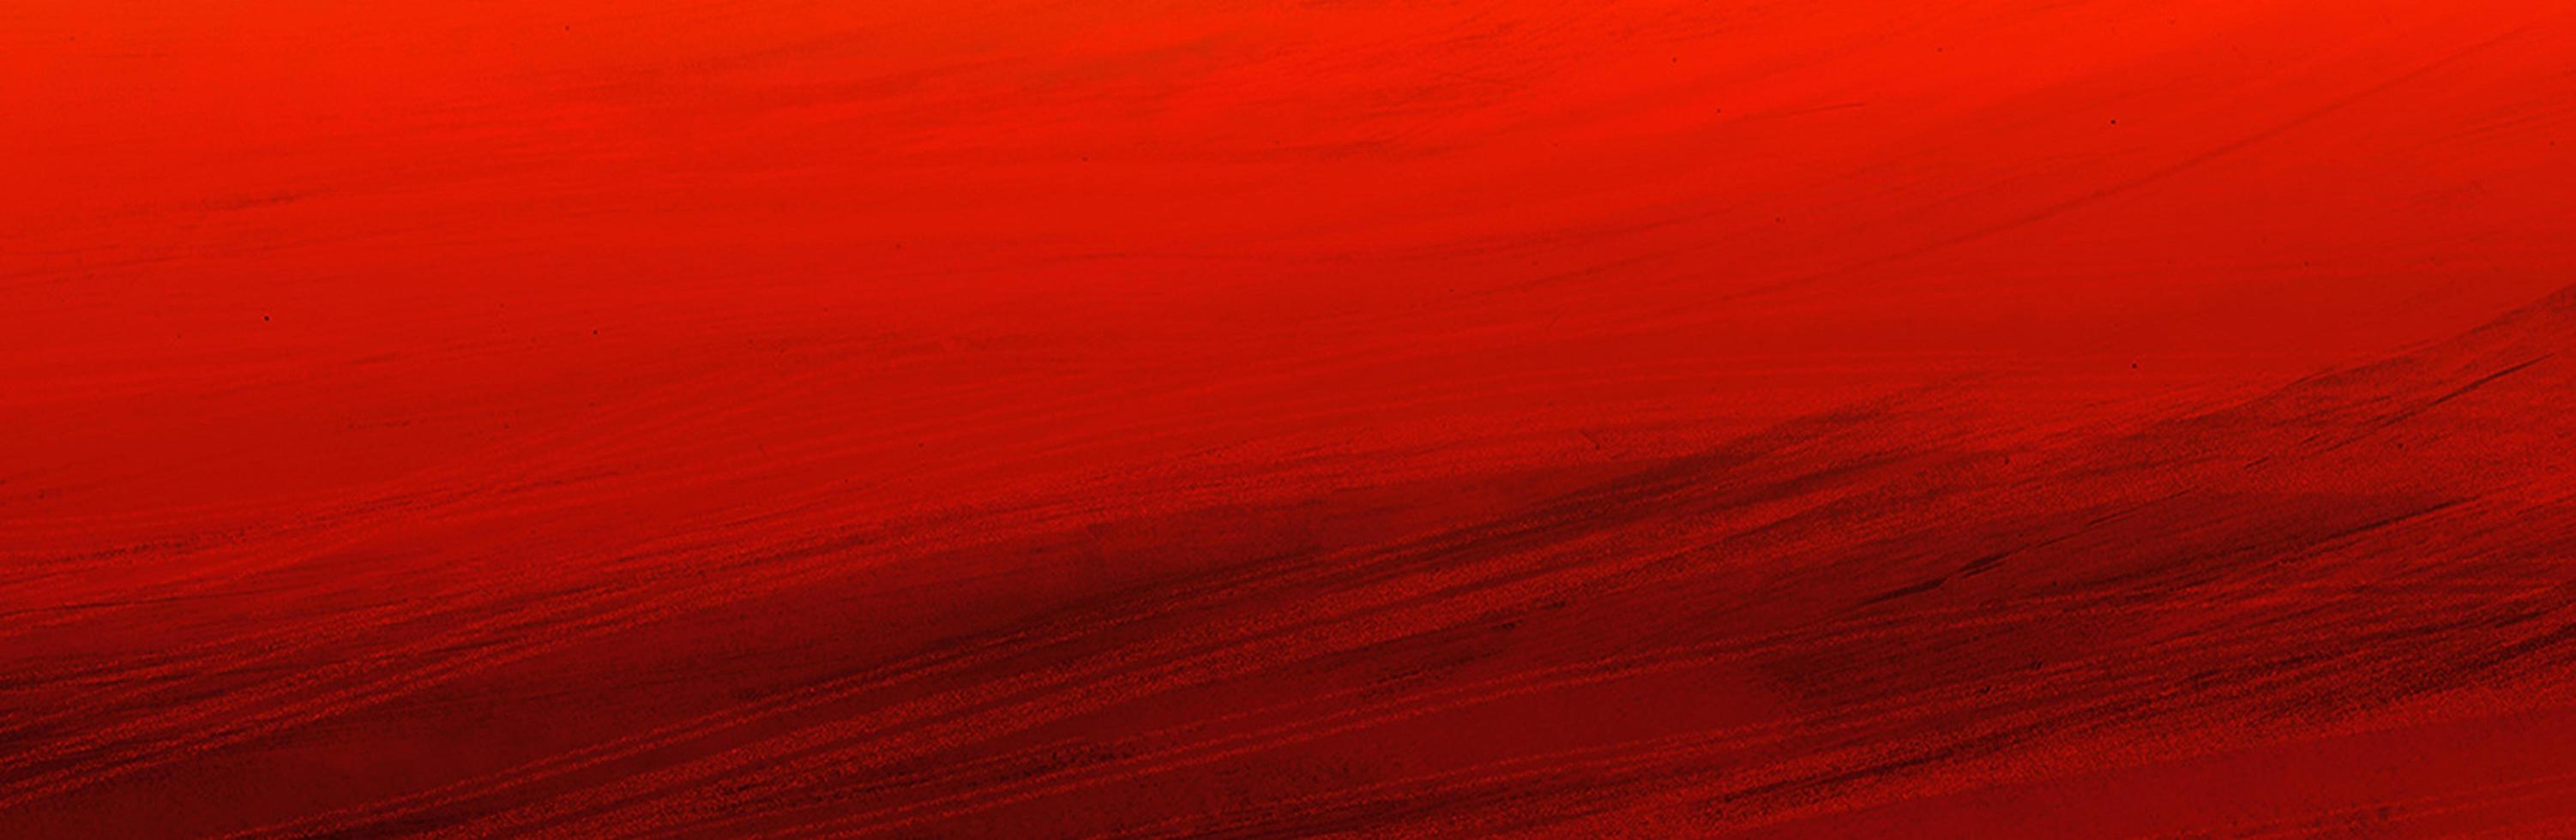 abstrakte rote verschwommene Hintergrundtextur foto